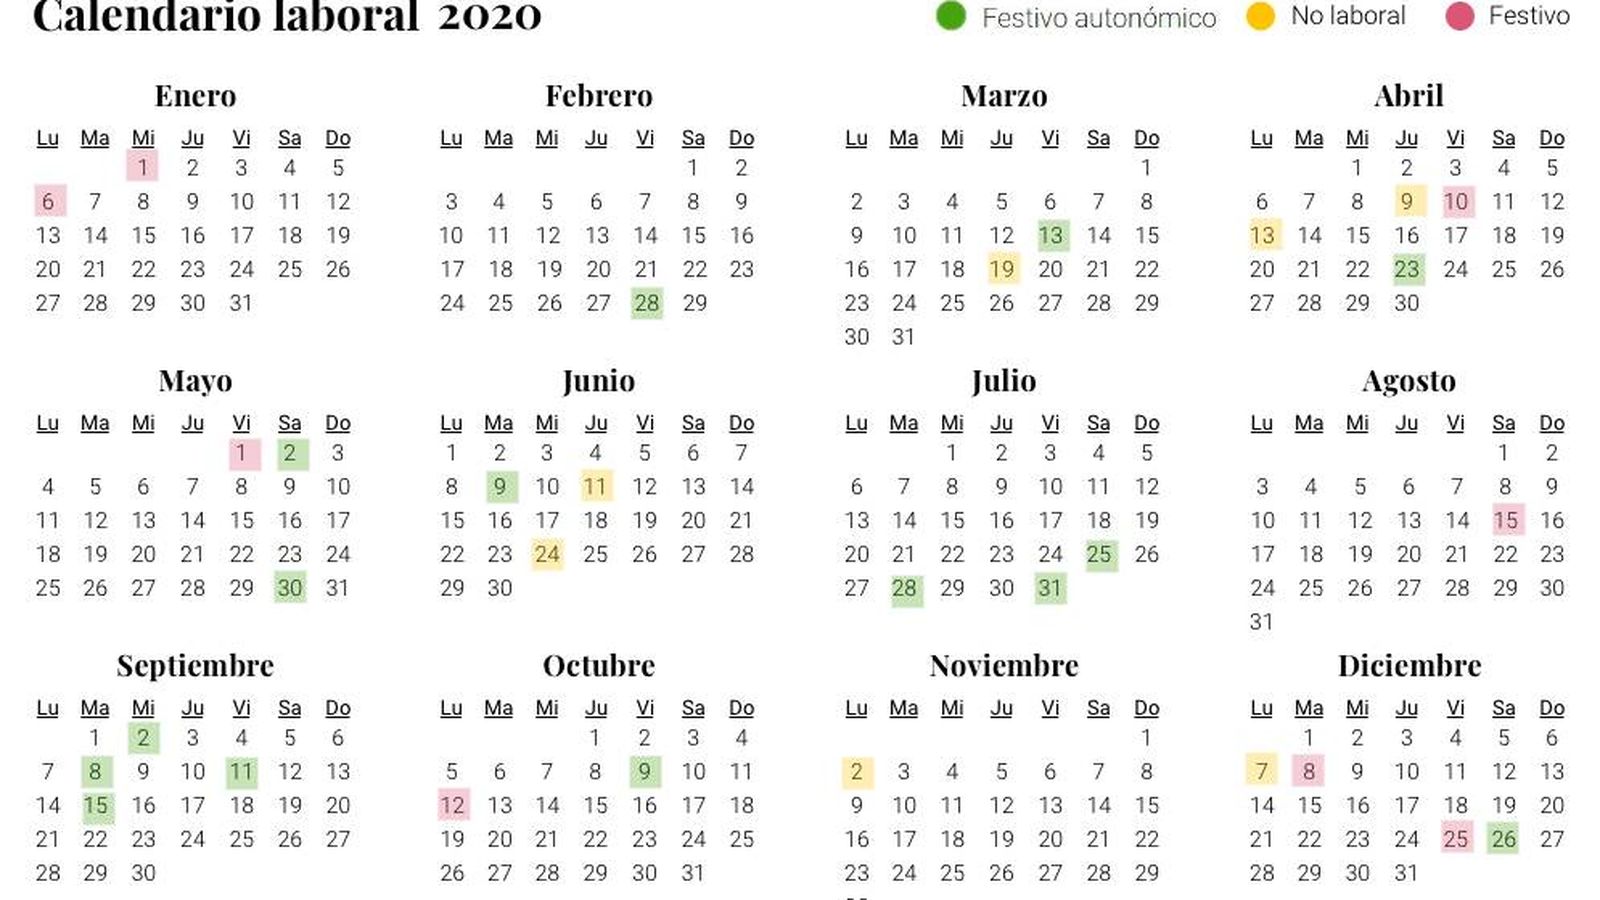 Foto: Calendario laboral para 2020 a nivel estatal (El Confidencial)